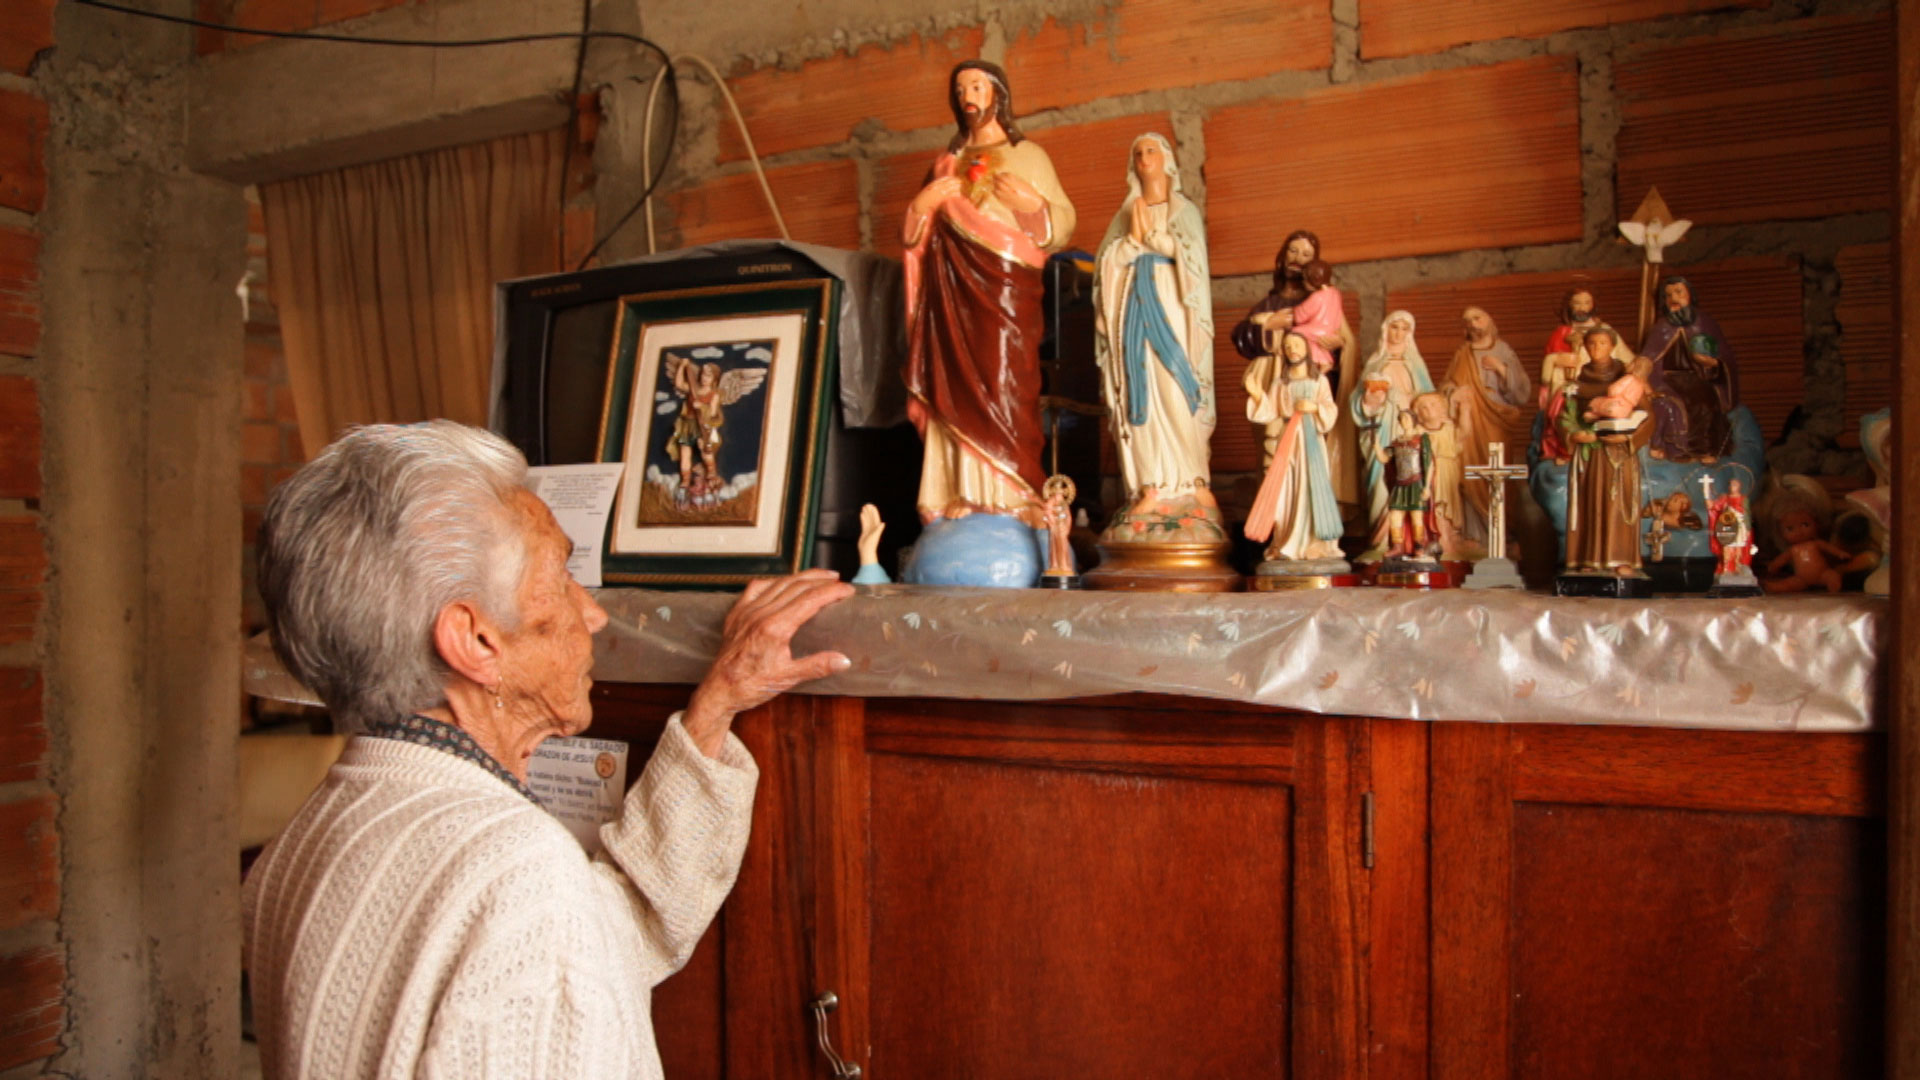 Uma senhora de costas, com cabelos brancos, olha para uma coleção de esculturas de santos perfiladas sobre um armário